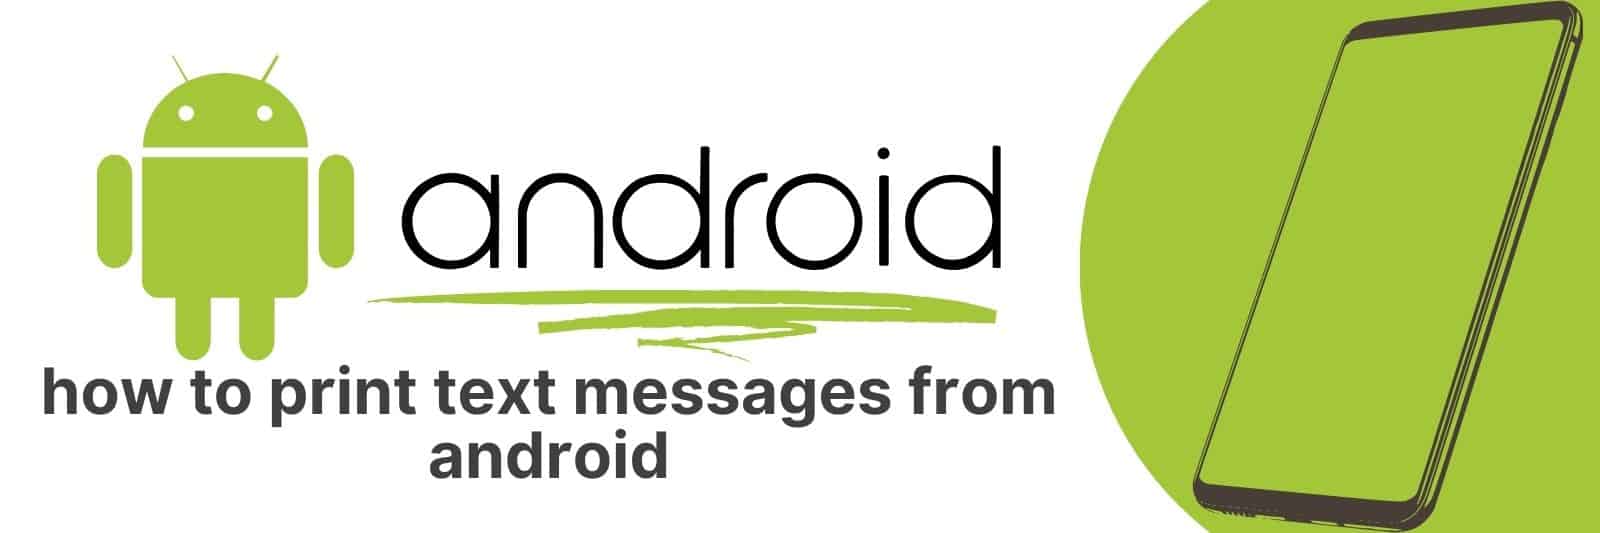 Como imprimir mensagens de texto do Android